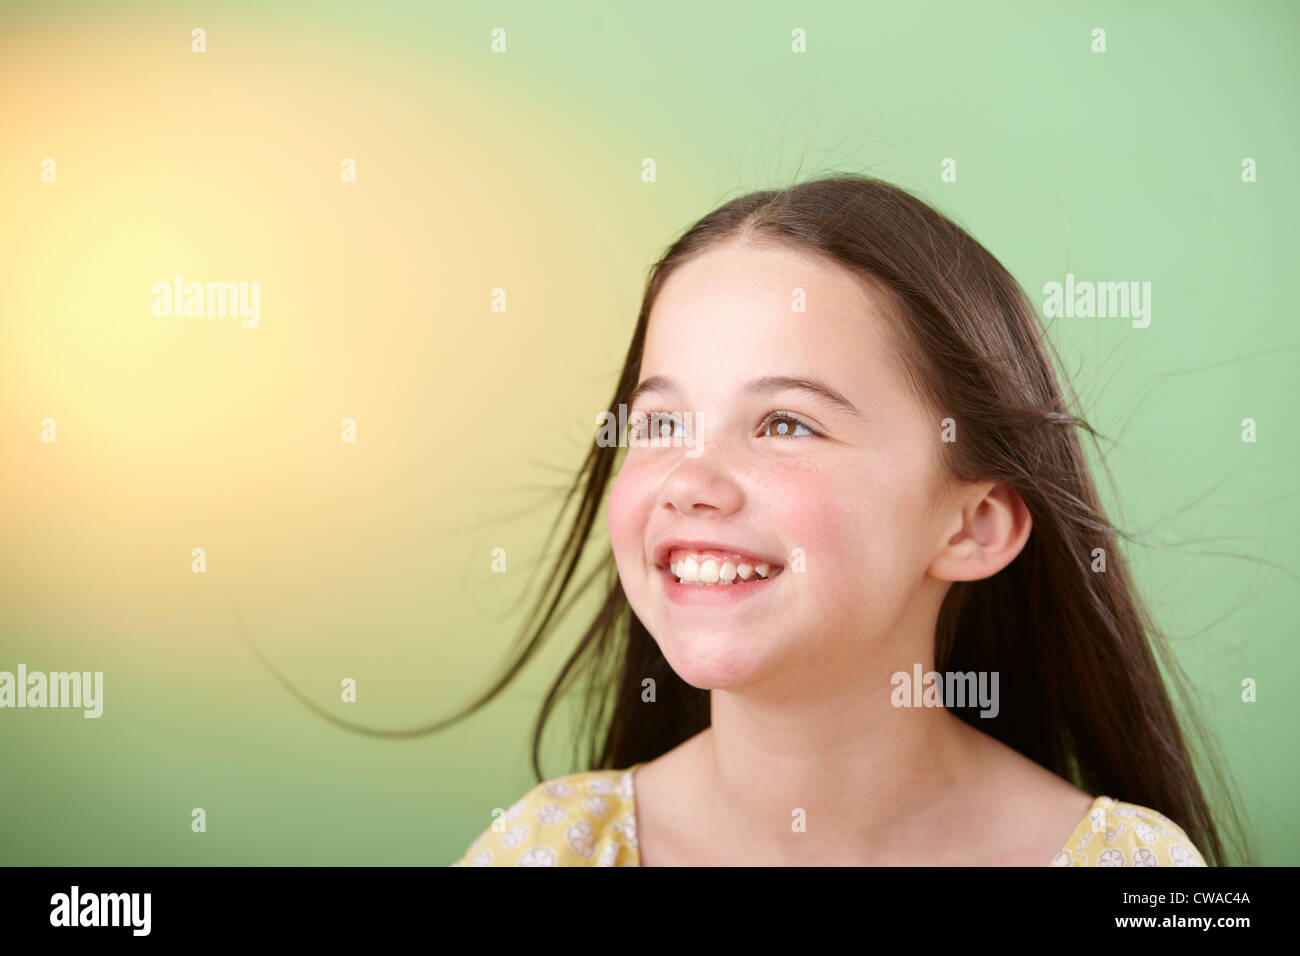 Brunette girl smiling Stock Photo